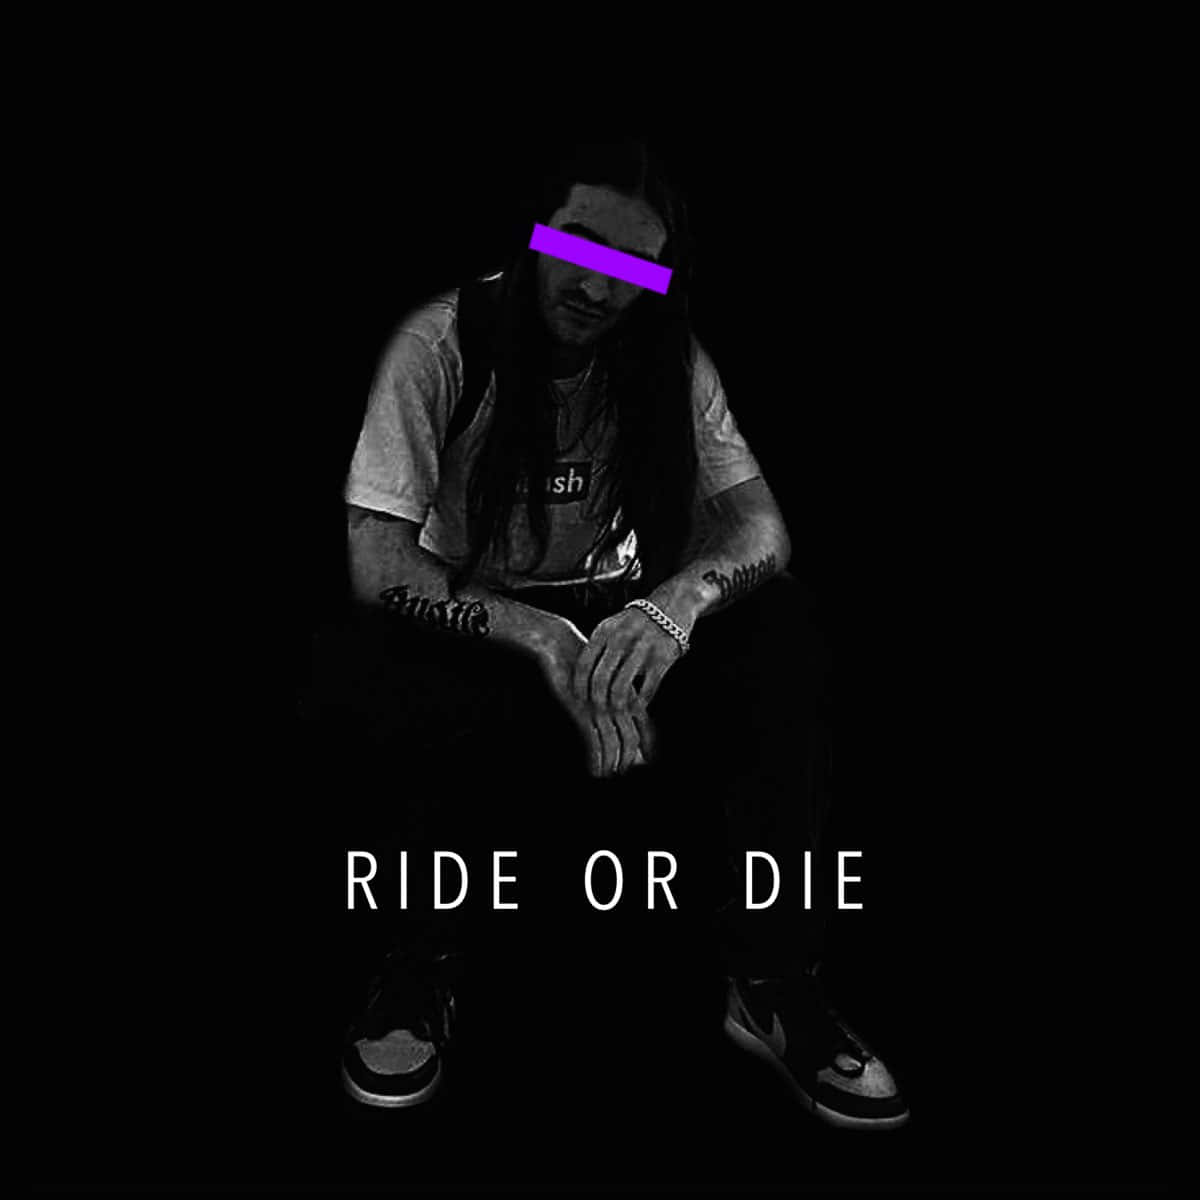 Ride Or Die By Dj Savage Wallpaper